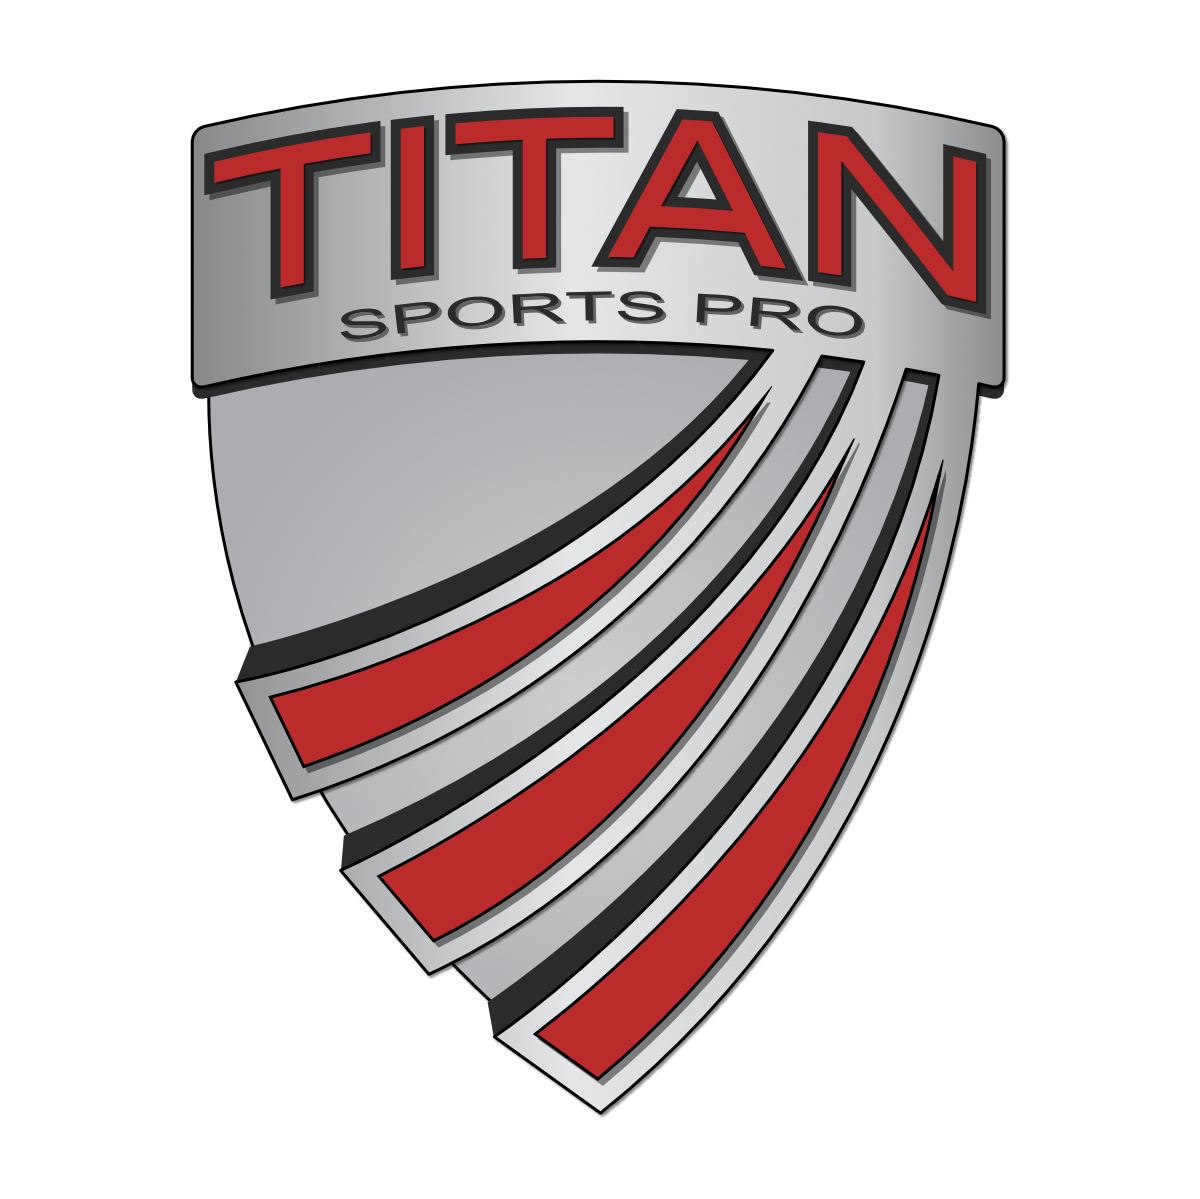 Titan Sports Pro